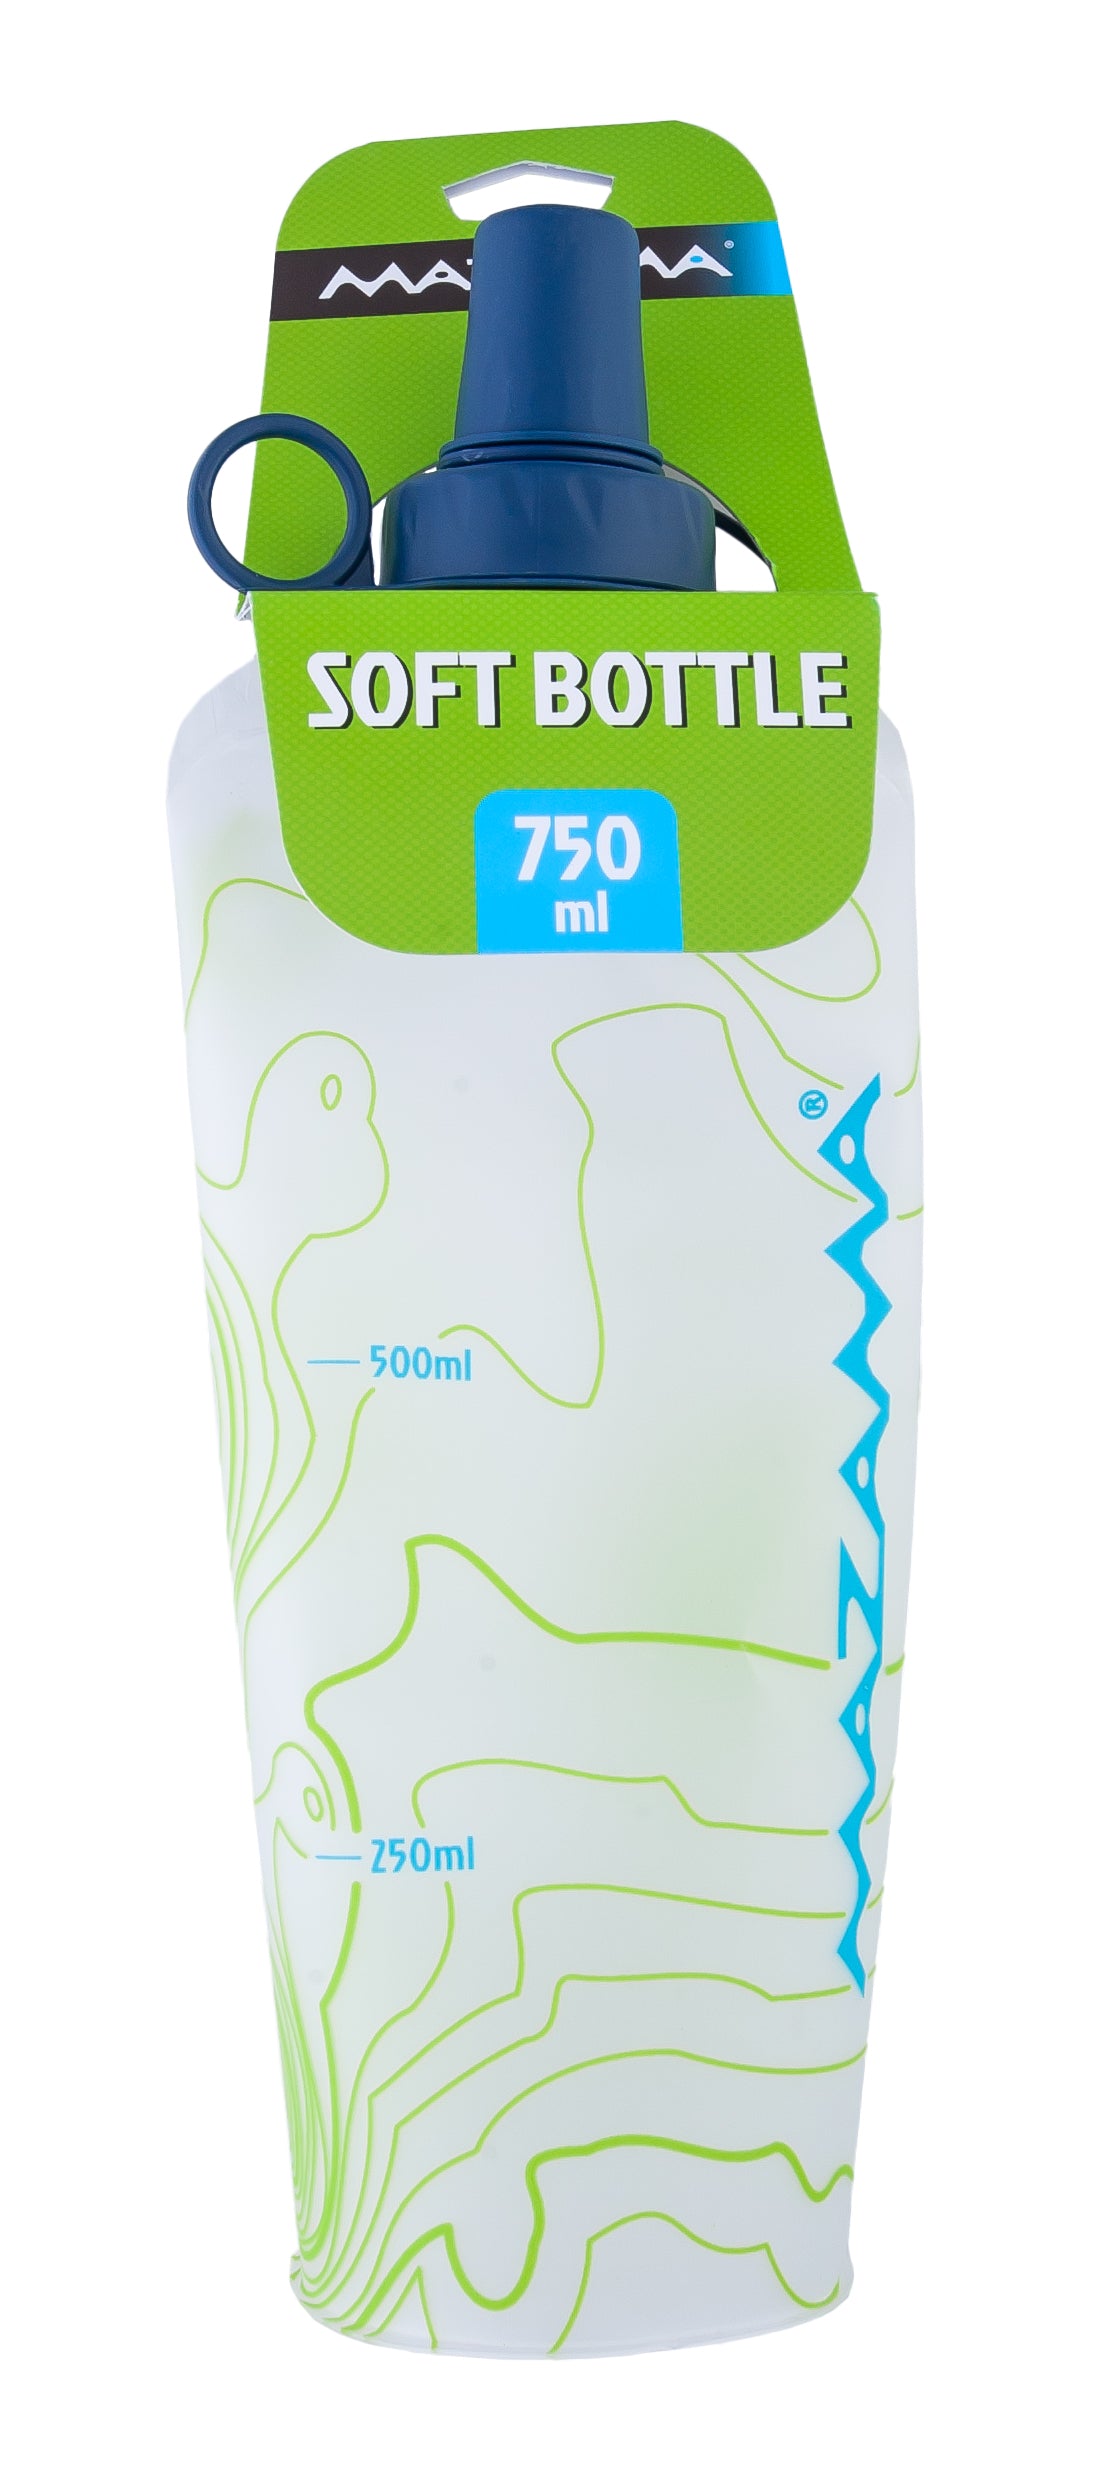 Aquabend Soft Bottles 750ml or 500ml